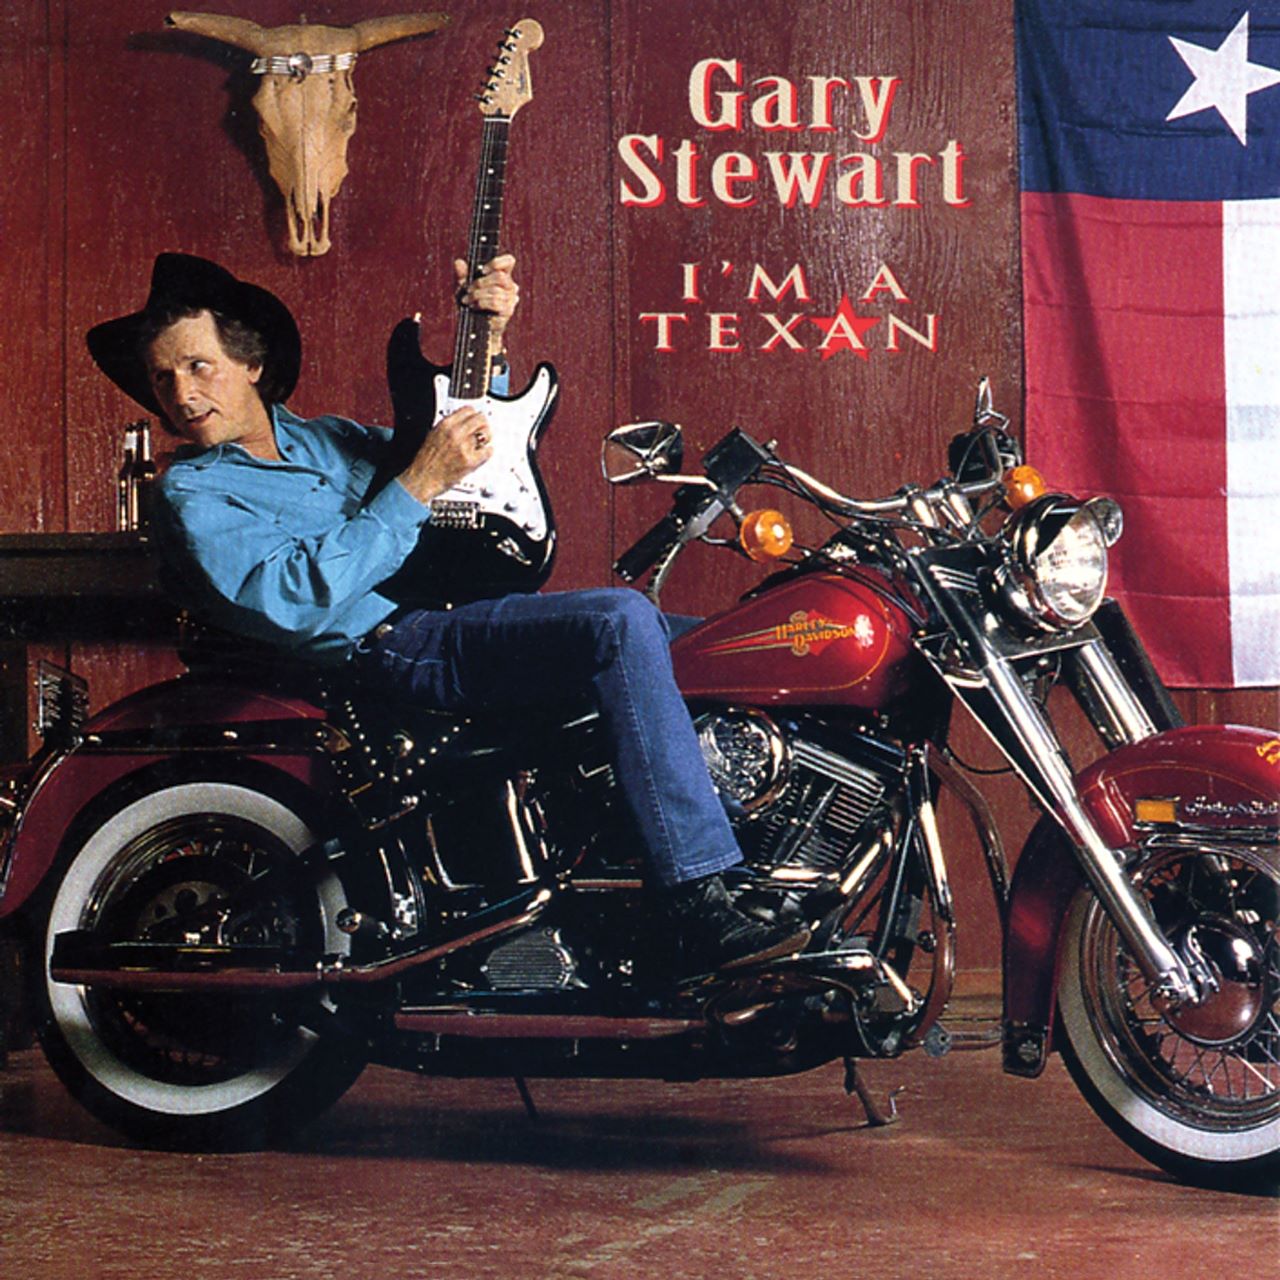 Gary Stewart - I'm A Texan cover album